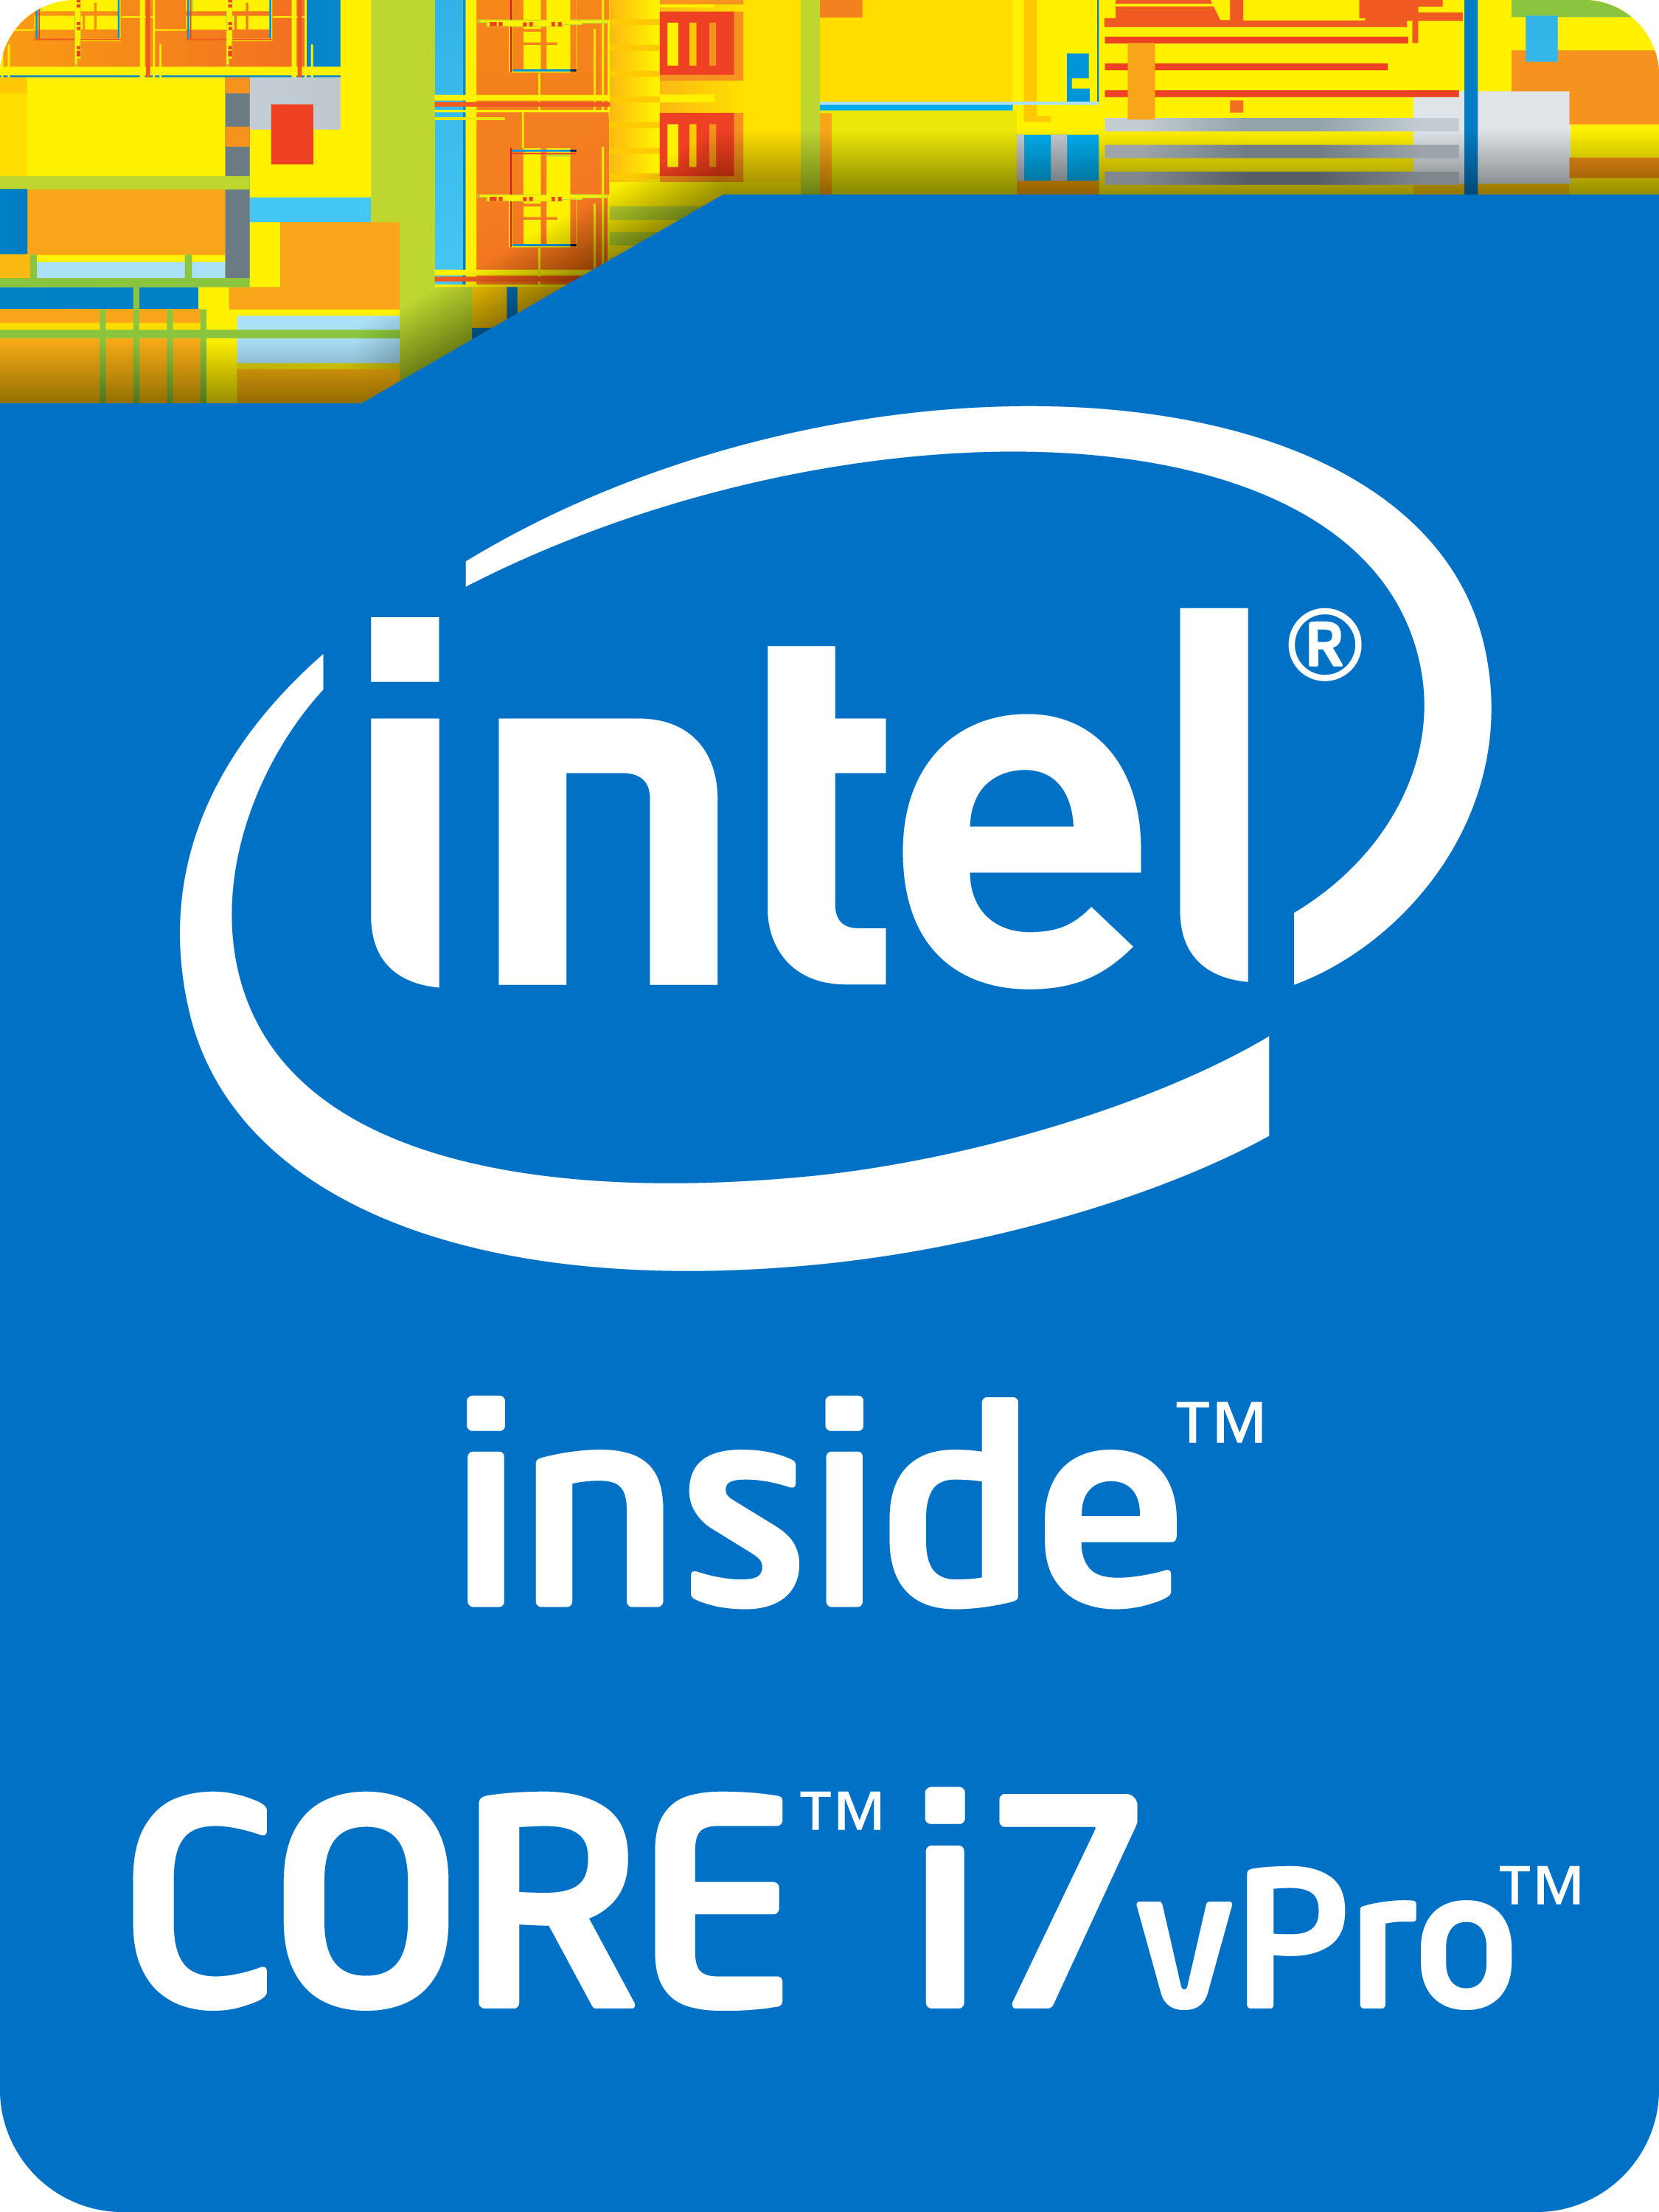 Vooruitzicht slank Hond Intel Core i7-4770K Desktop Processor - NotebookCheck.net Tech